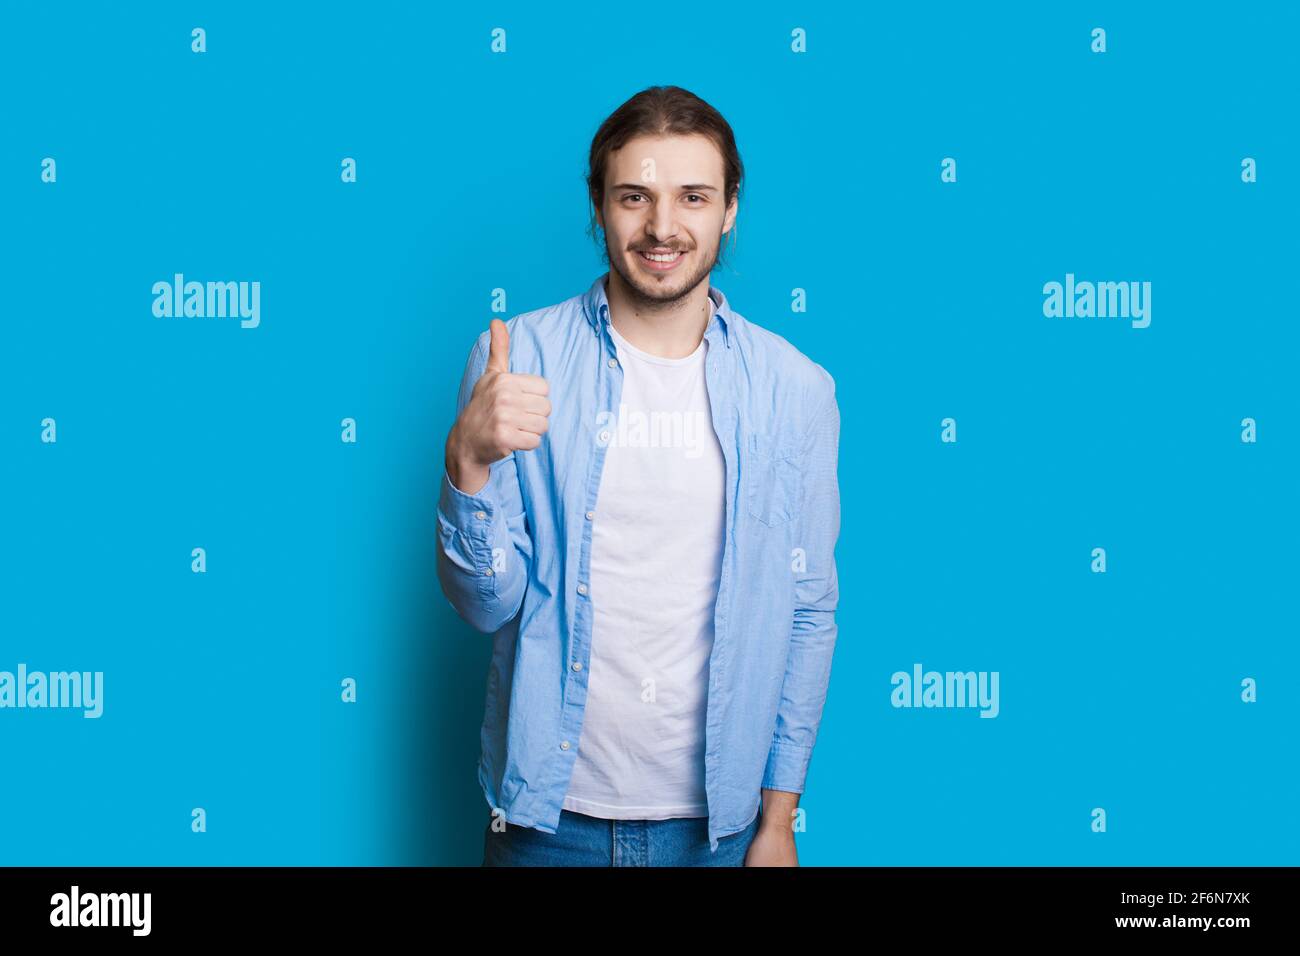 El hombre caucásico con barba y pelo largo está gestando el como signo en una pared azul del estudio Foto de stock